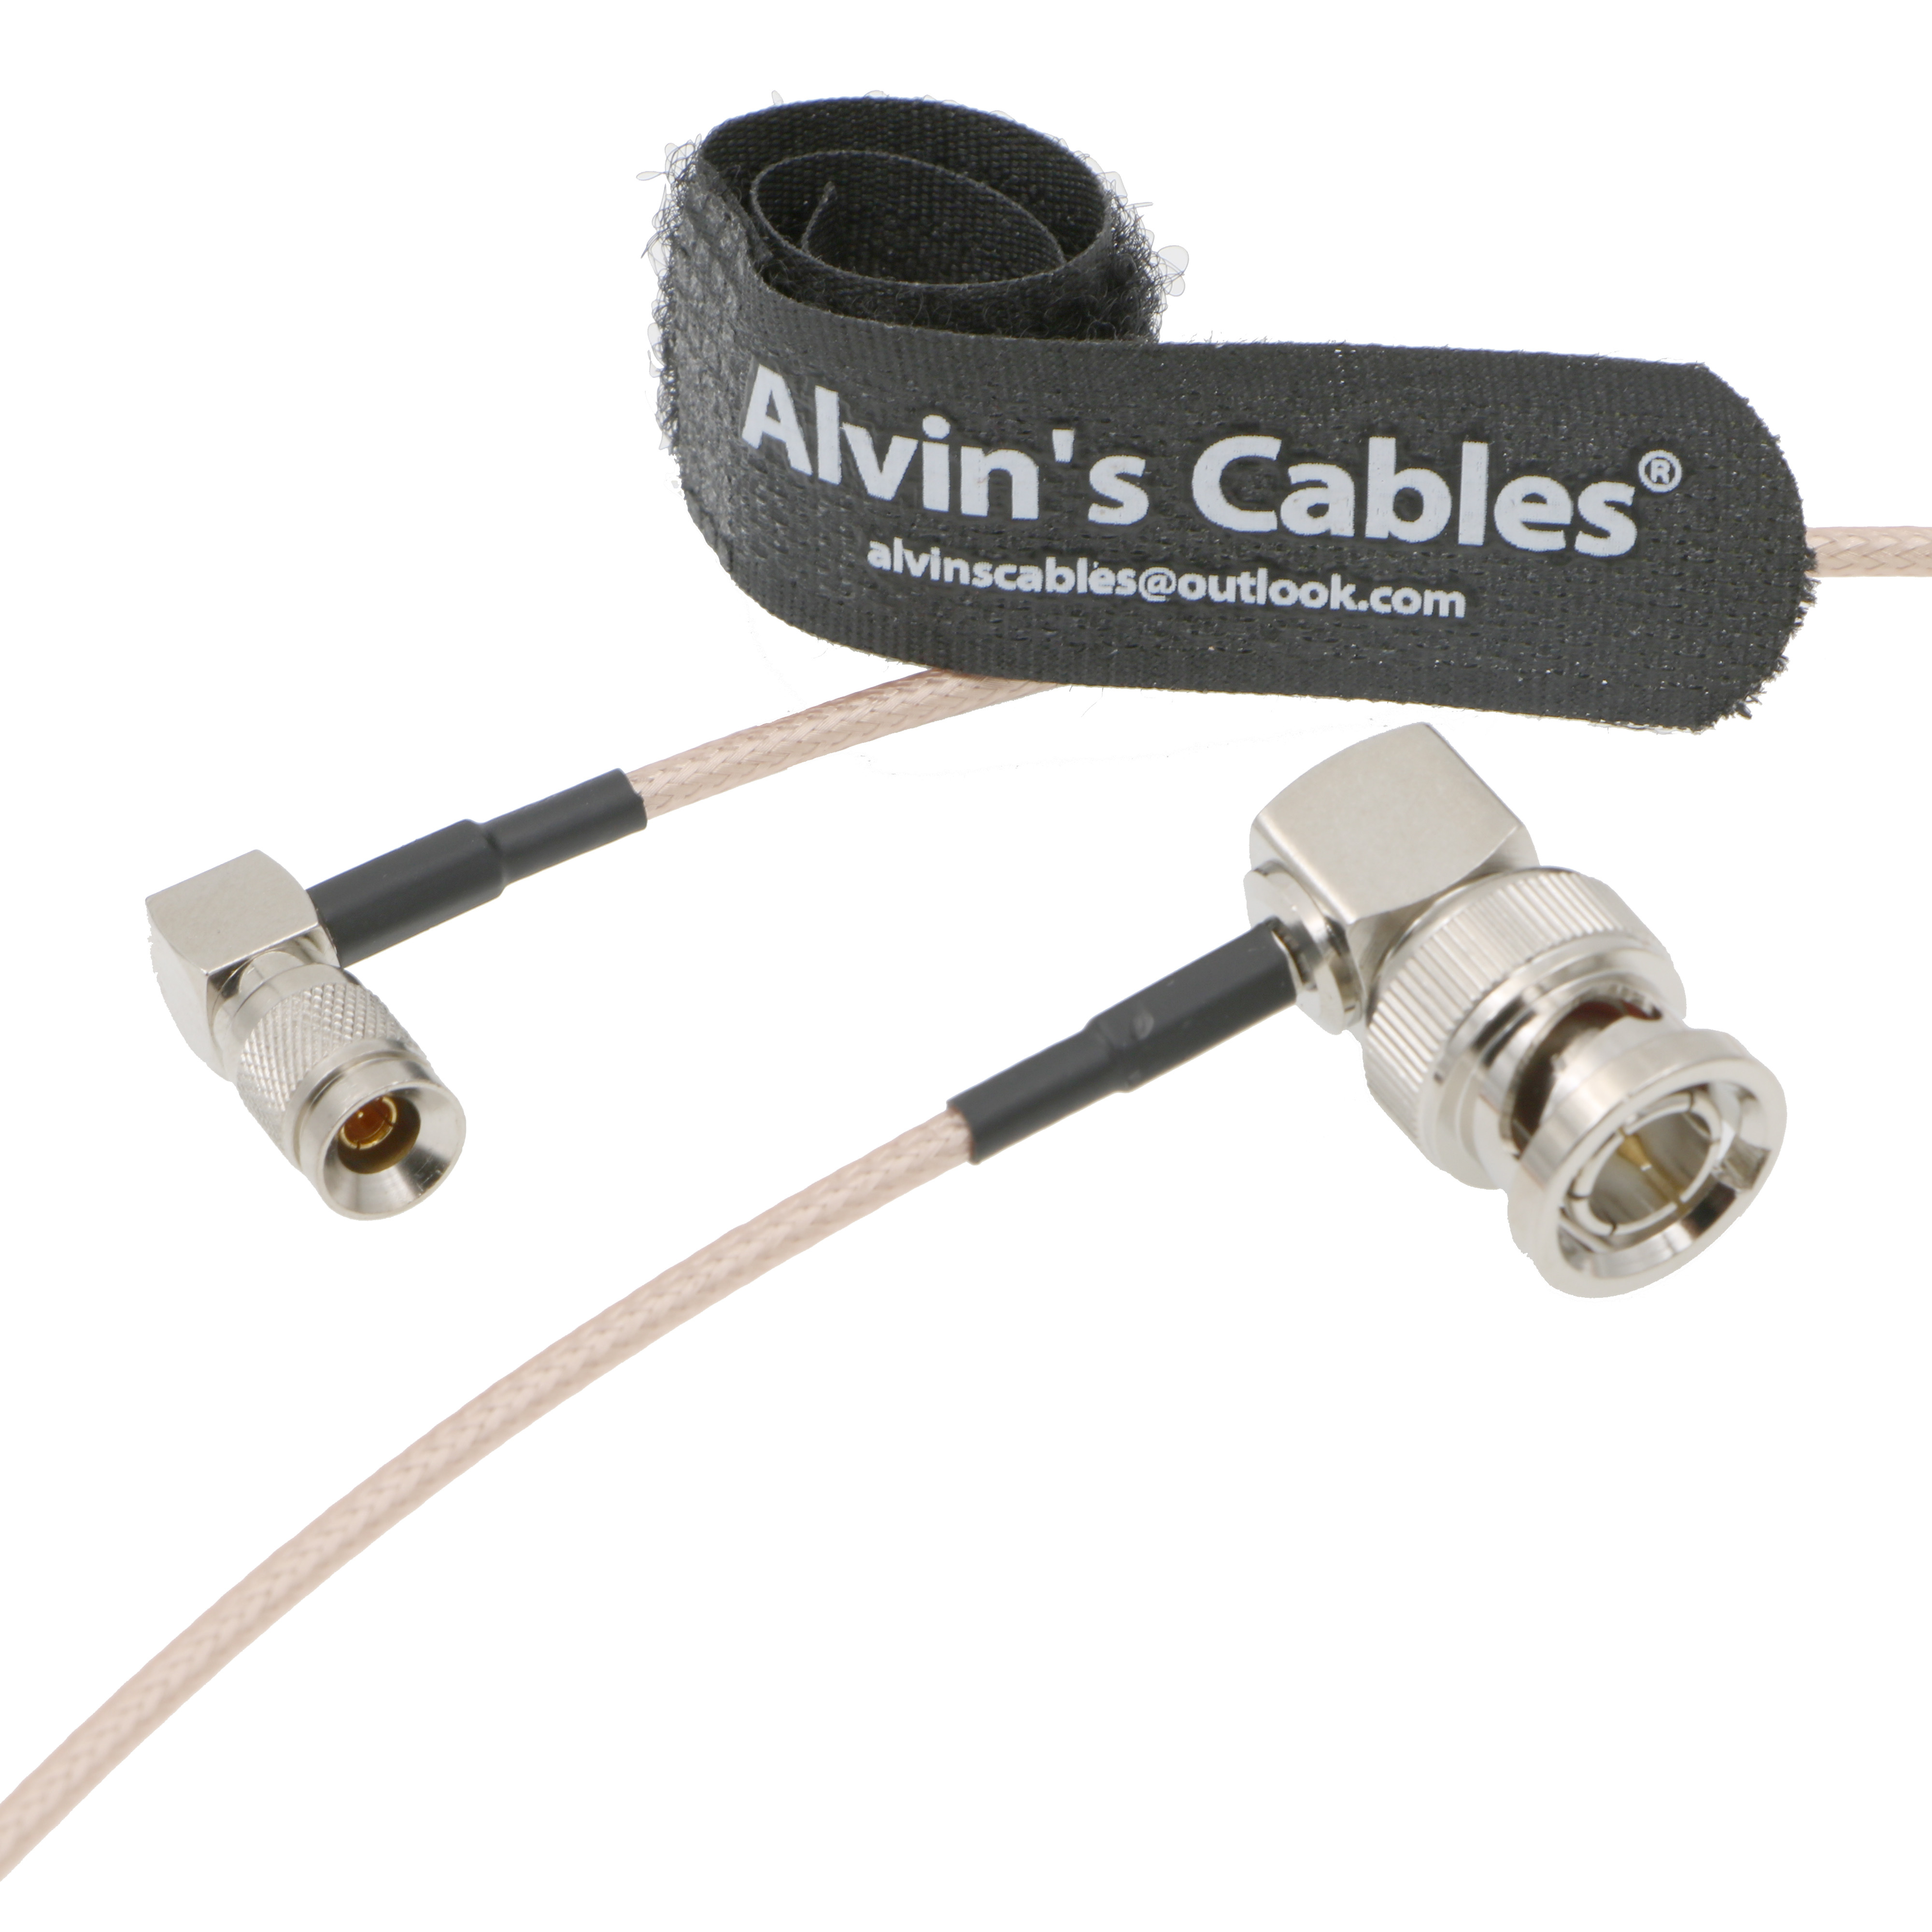 Alvins Cables BNC maschio a maschio RG179 cavo coassiale per la macchina fotografica BMCC VIDEO Blackmagic angolo retto 60CM